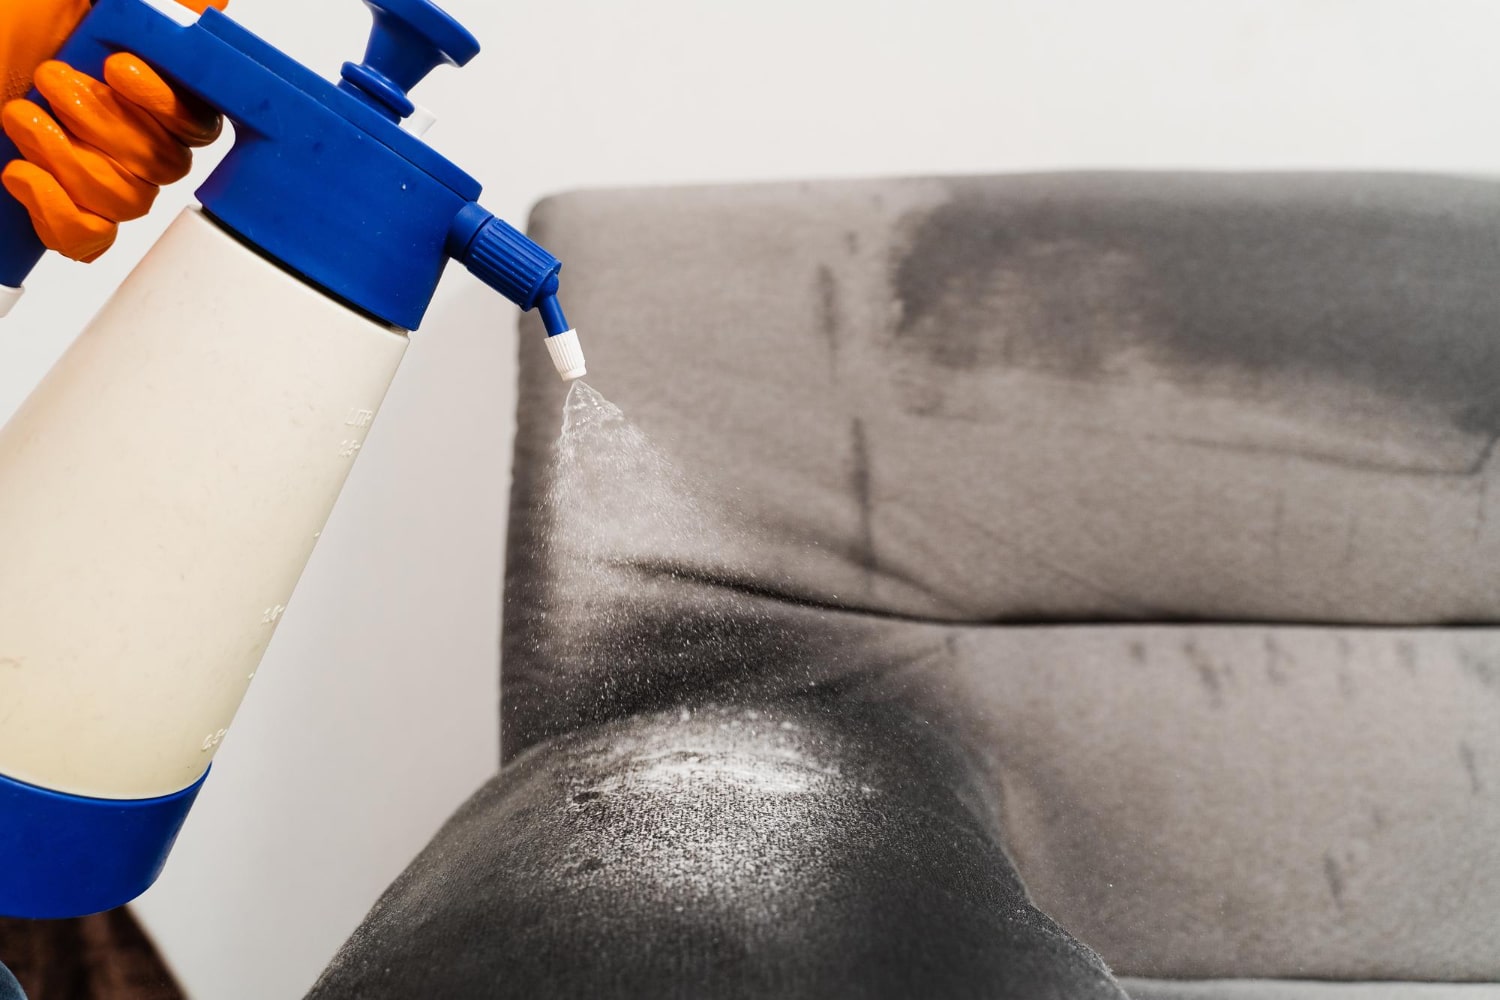 Gros plan sur une main gantée orange pulvérisant un produit de nettoyage sur un fauteuil gris foncé, faisant apparaître la mousse blanche du produit.